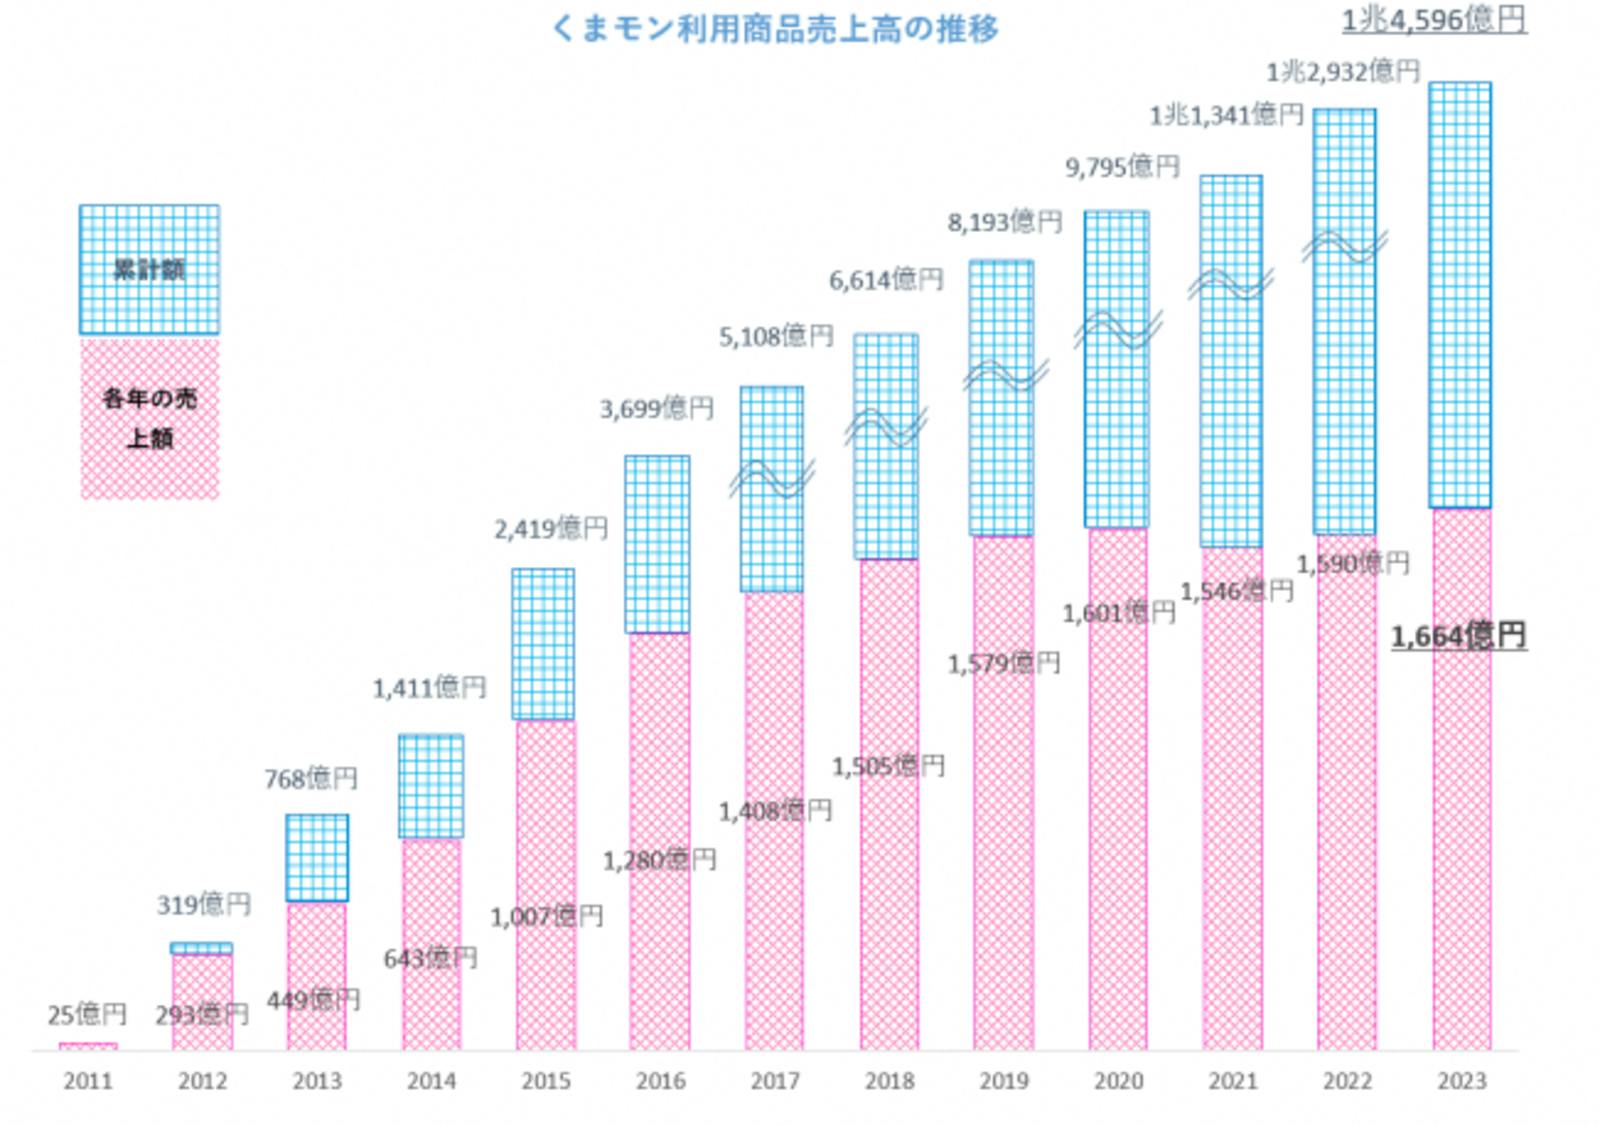 ▲くまモン利用商品の売上高推移：熊本県